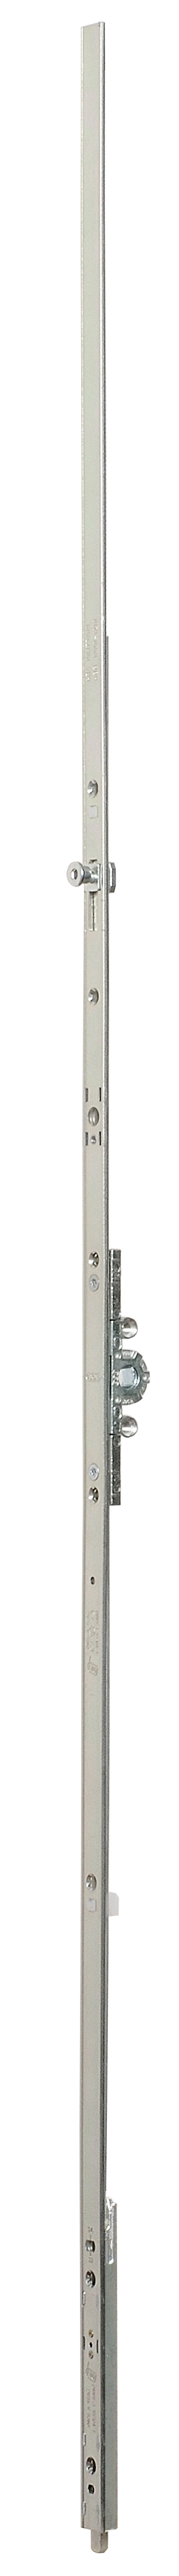 AGB -  Cremonese ARTECH anta a bandiera altezza maniglia fissa con puntale chiusura ad espansione per seconda anta - gr / dim. 05 - entrata 15 - alt. man. 500 - lbb/hbb 1394 - 1610